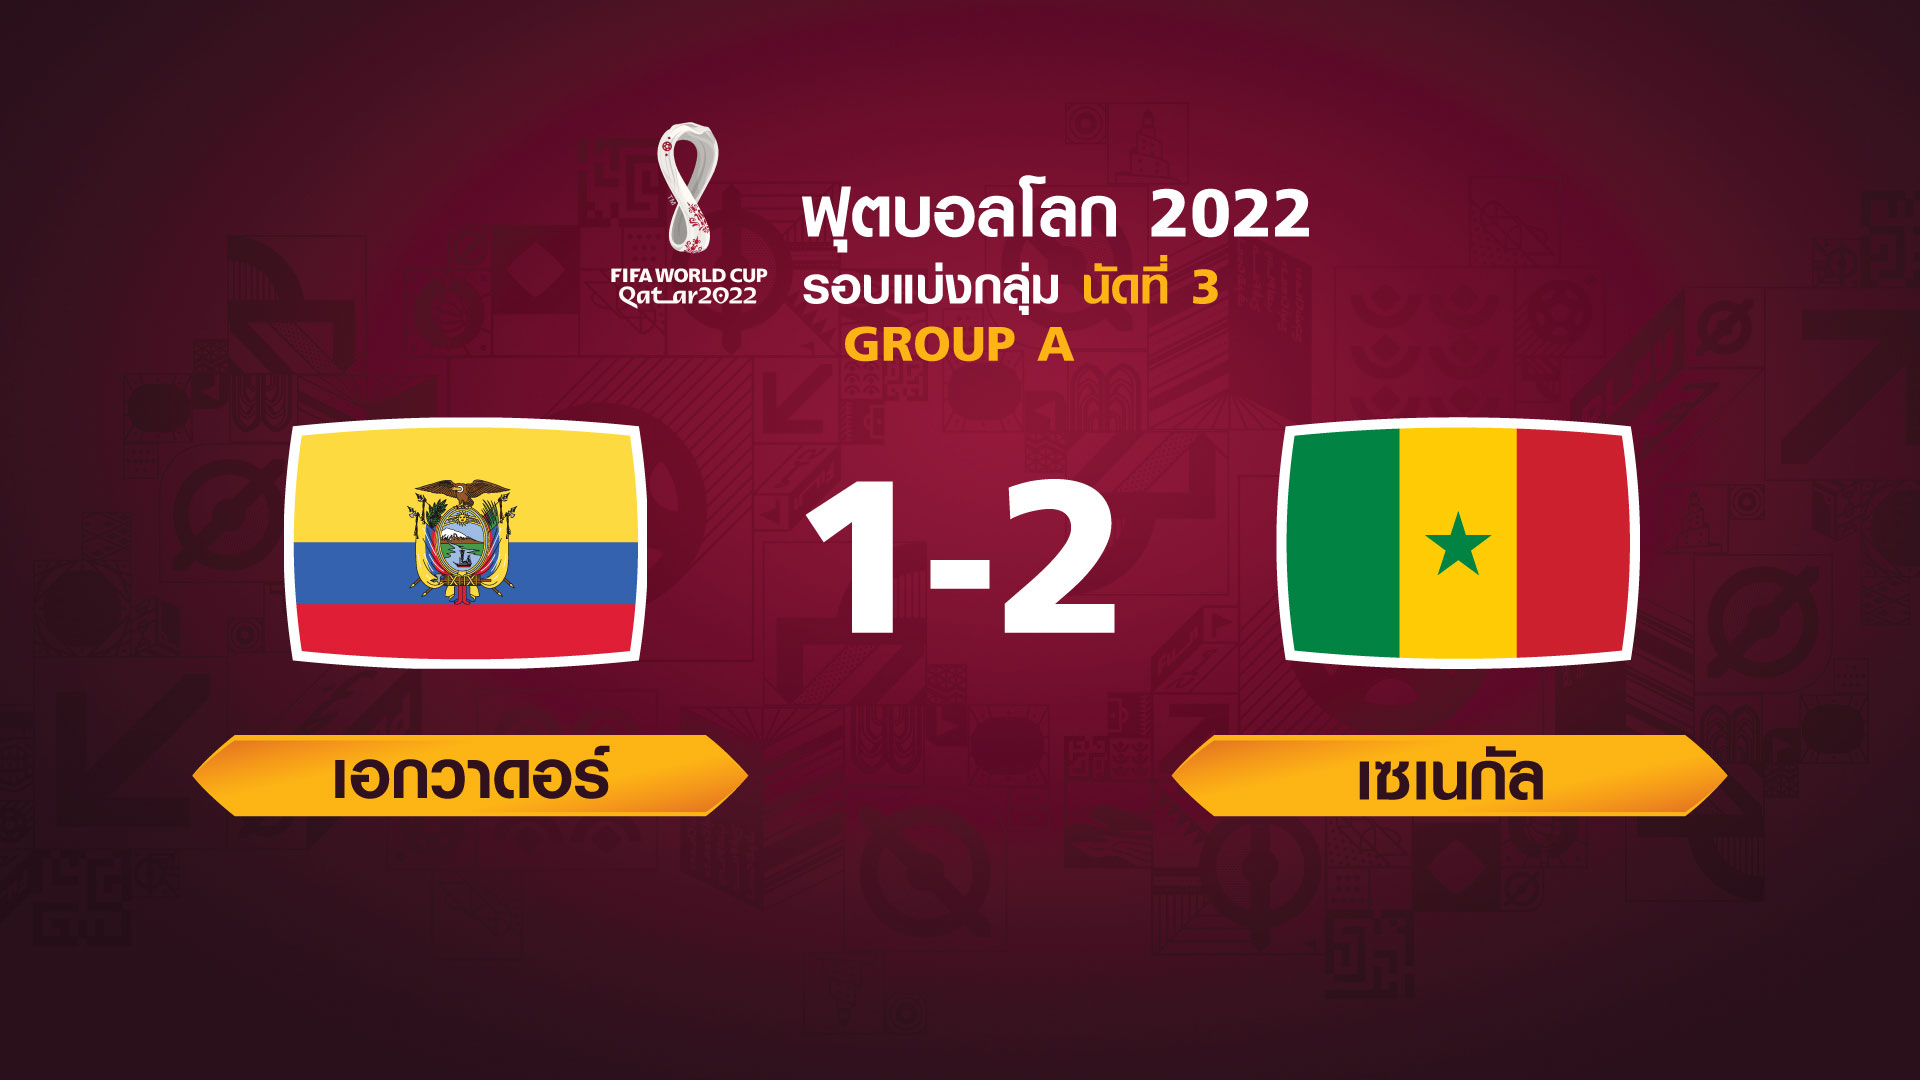 ฟุตบอลโลก 2022 รอบแบ่งกลุ่ม นัดที่ 3 ระหว่าง ECUADOR VS SENEGAL